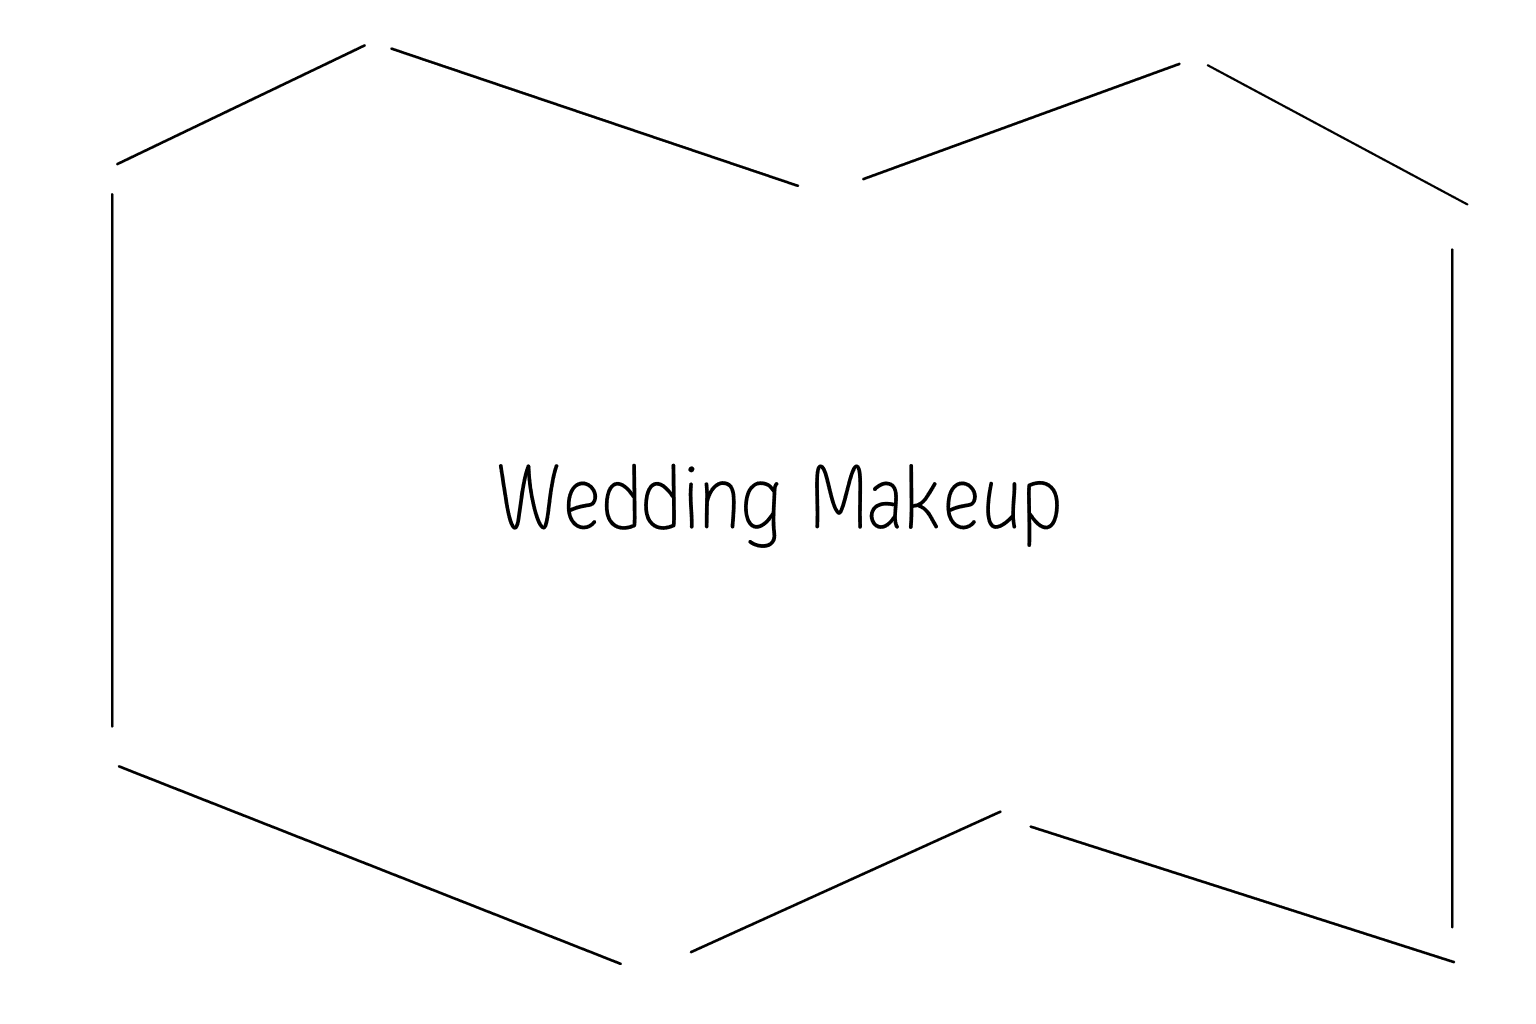 Ilustración de maquilladores de boda